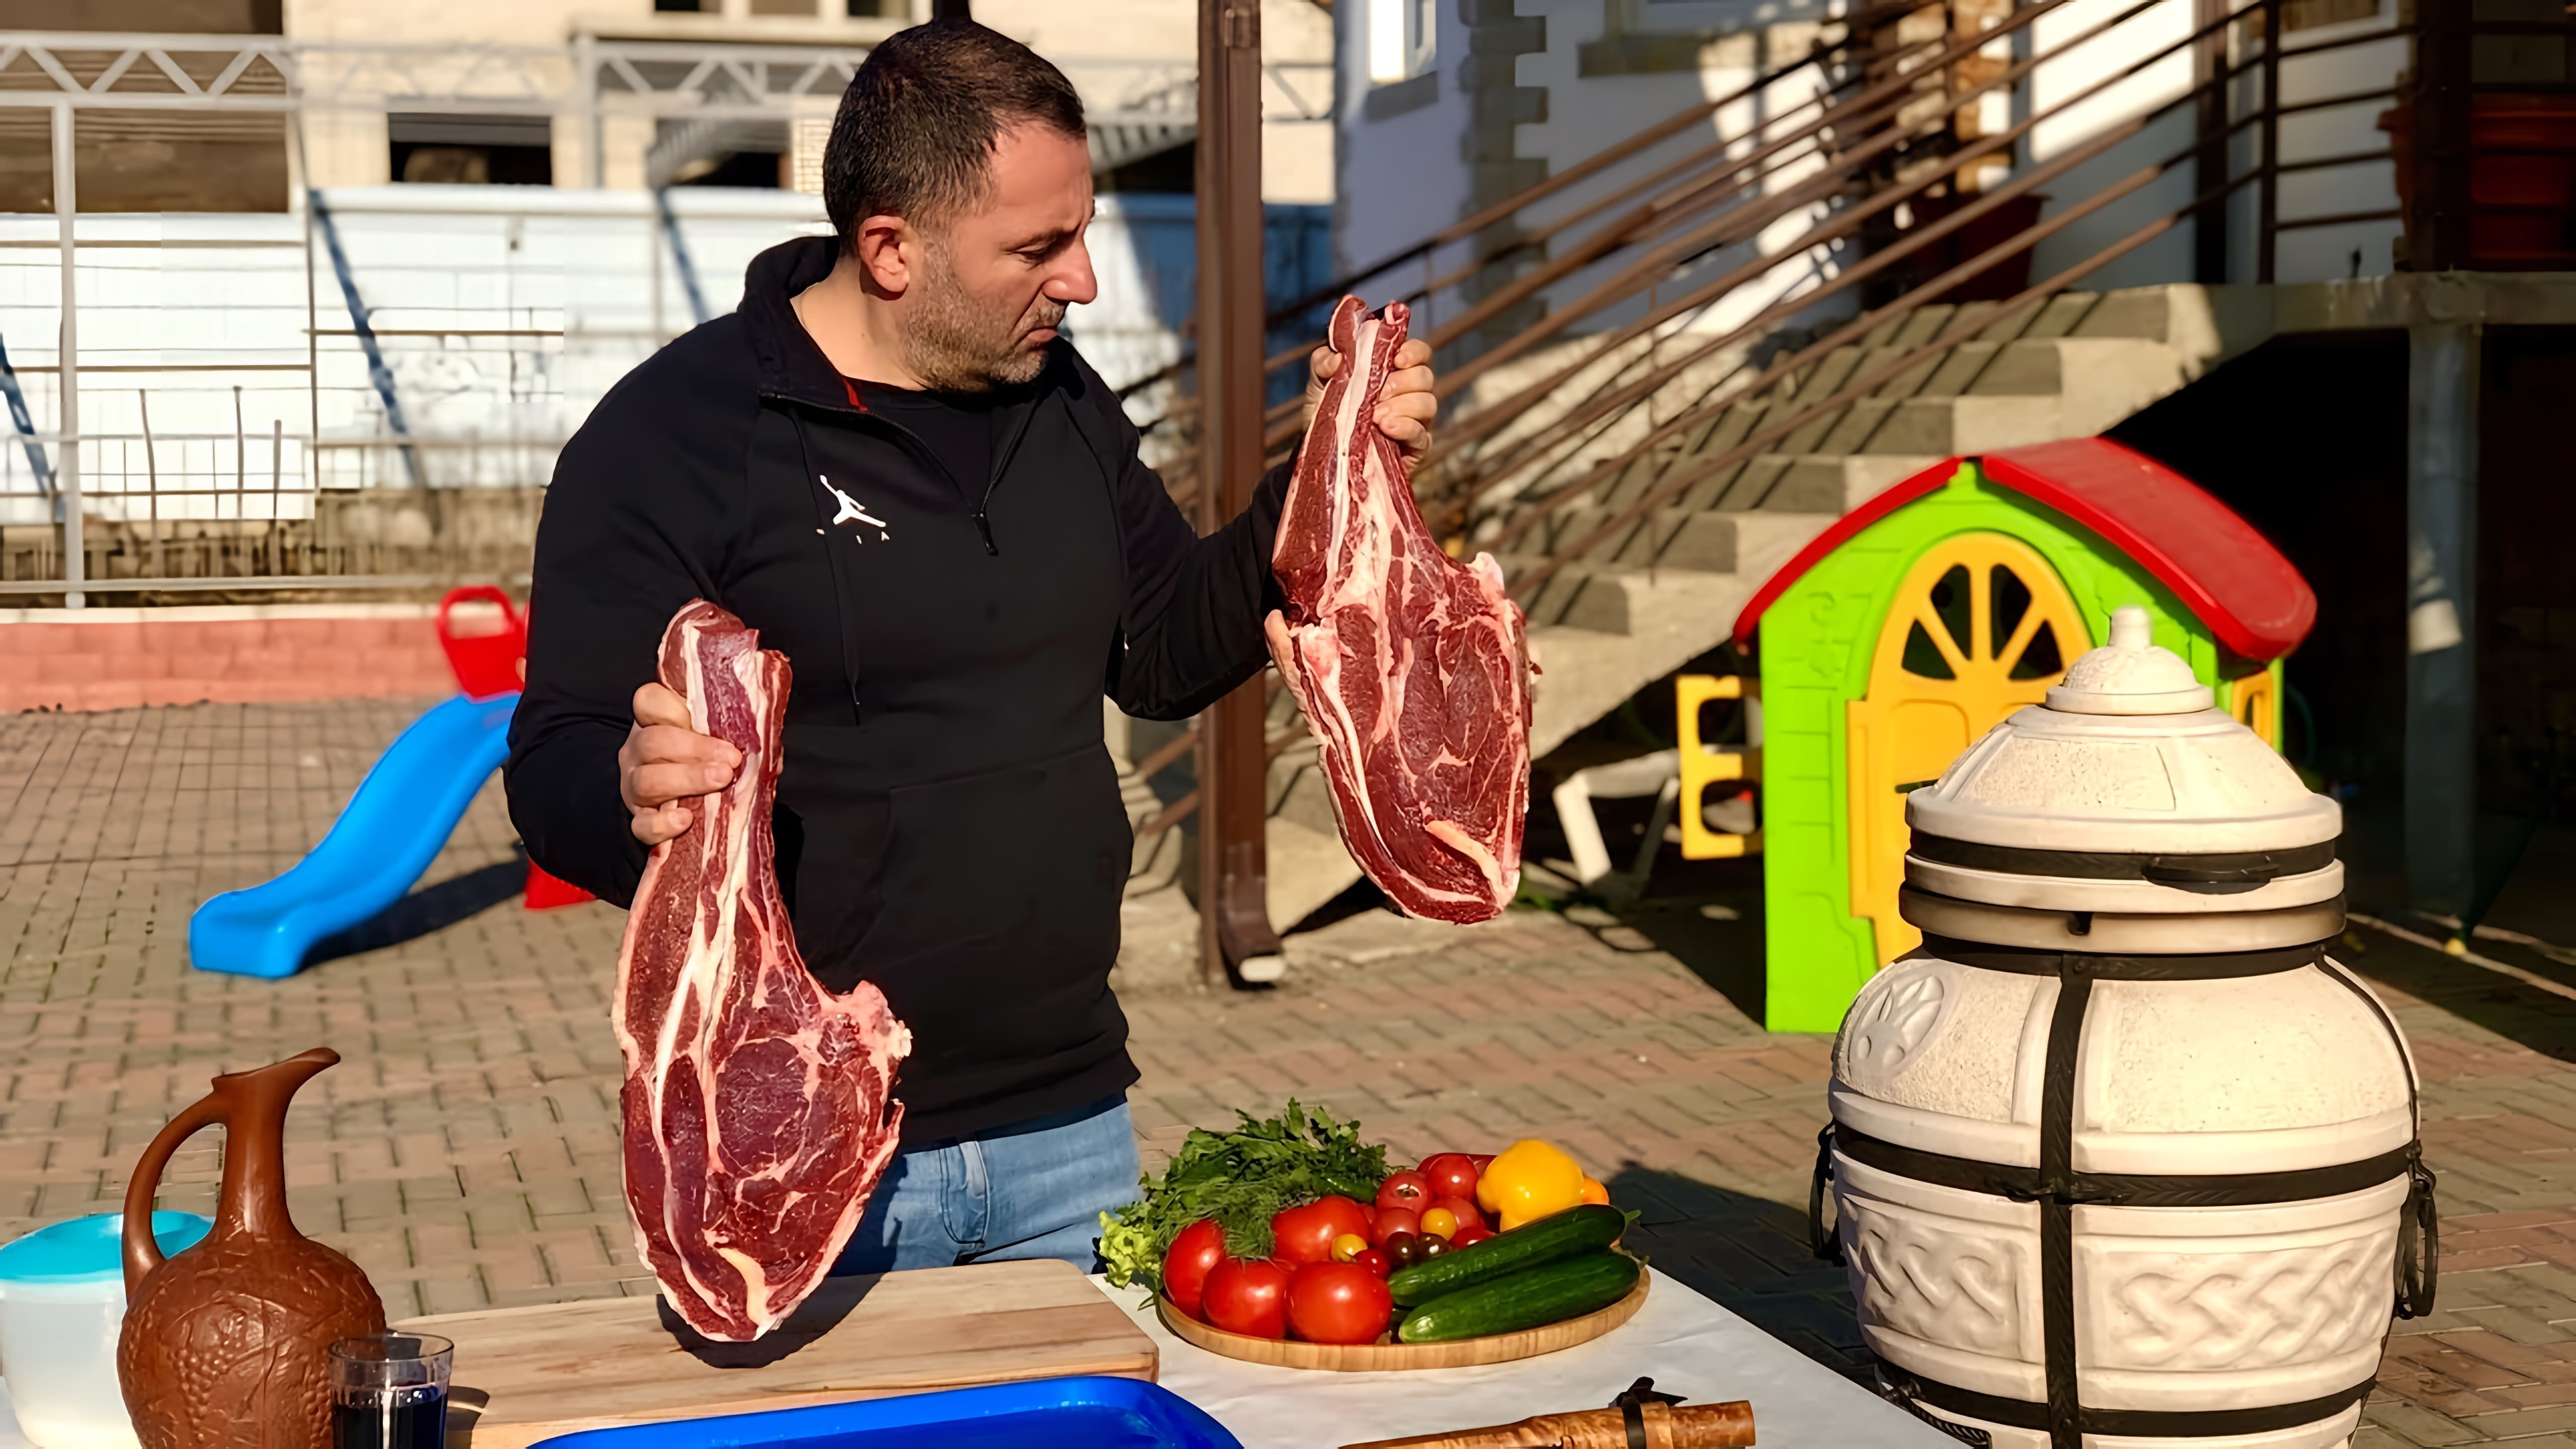 Мясо в тандыре - это традиционный способ приготовления мяса в некоторых странах, включая Кавказ и Среднюю Азию